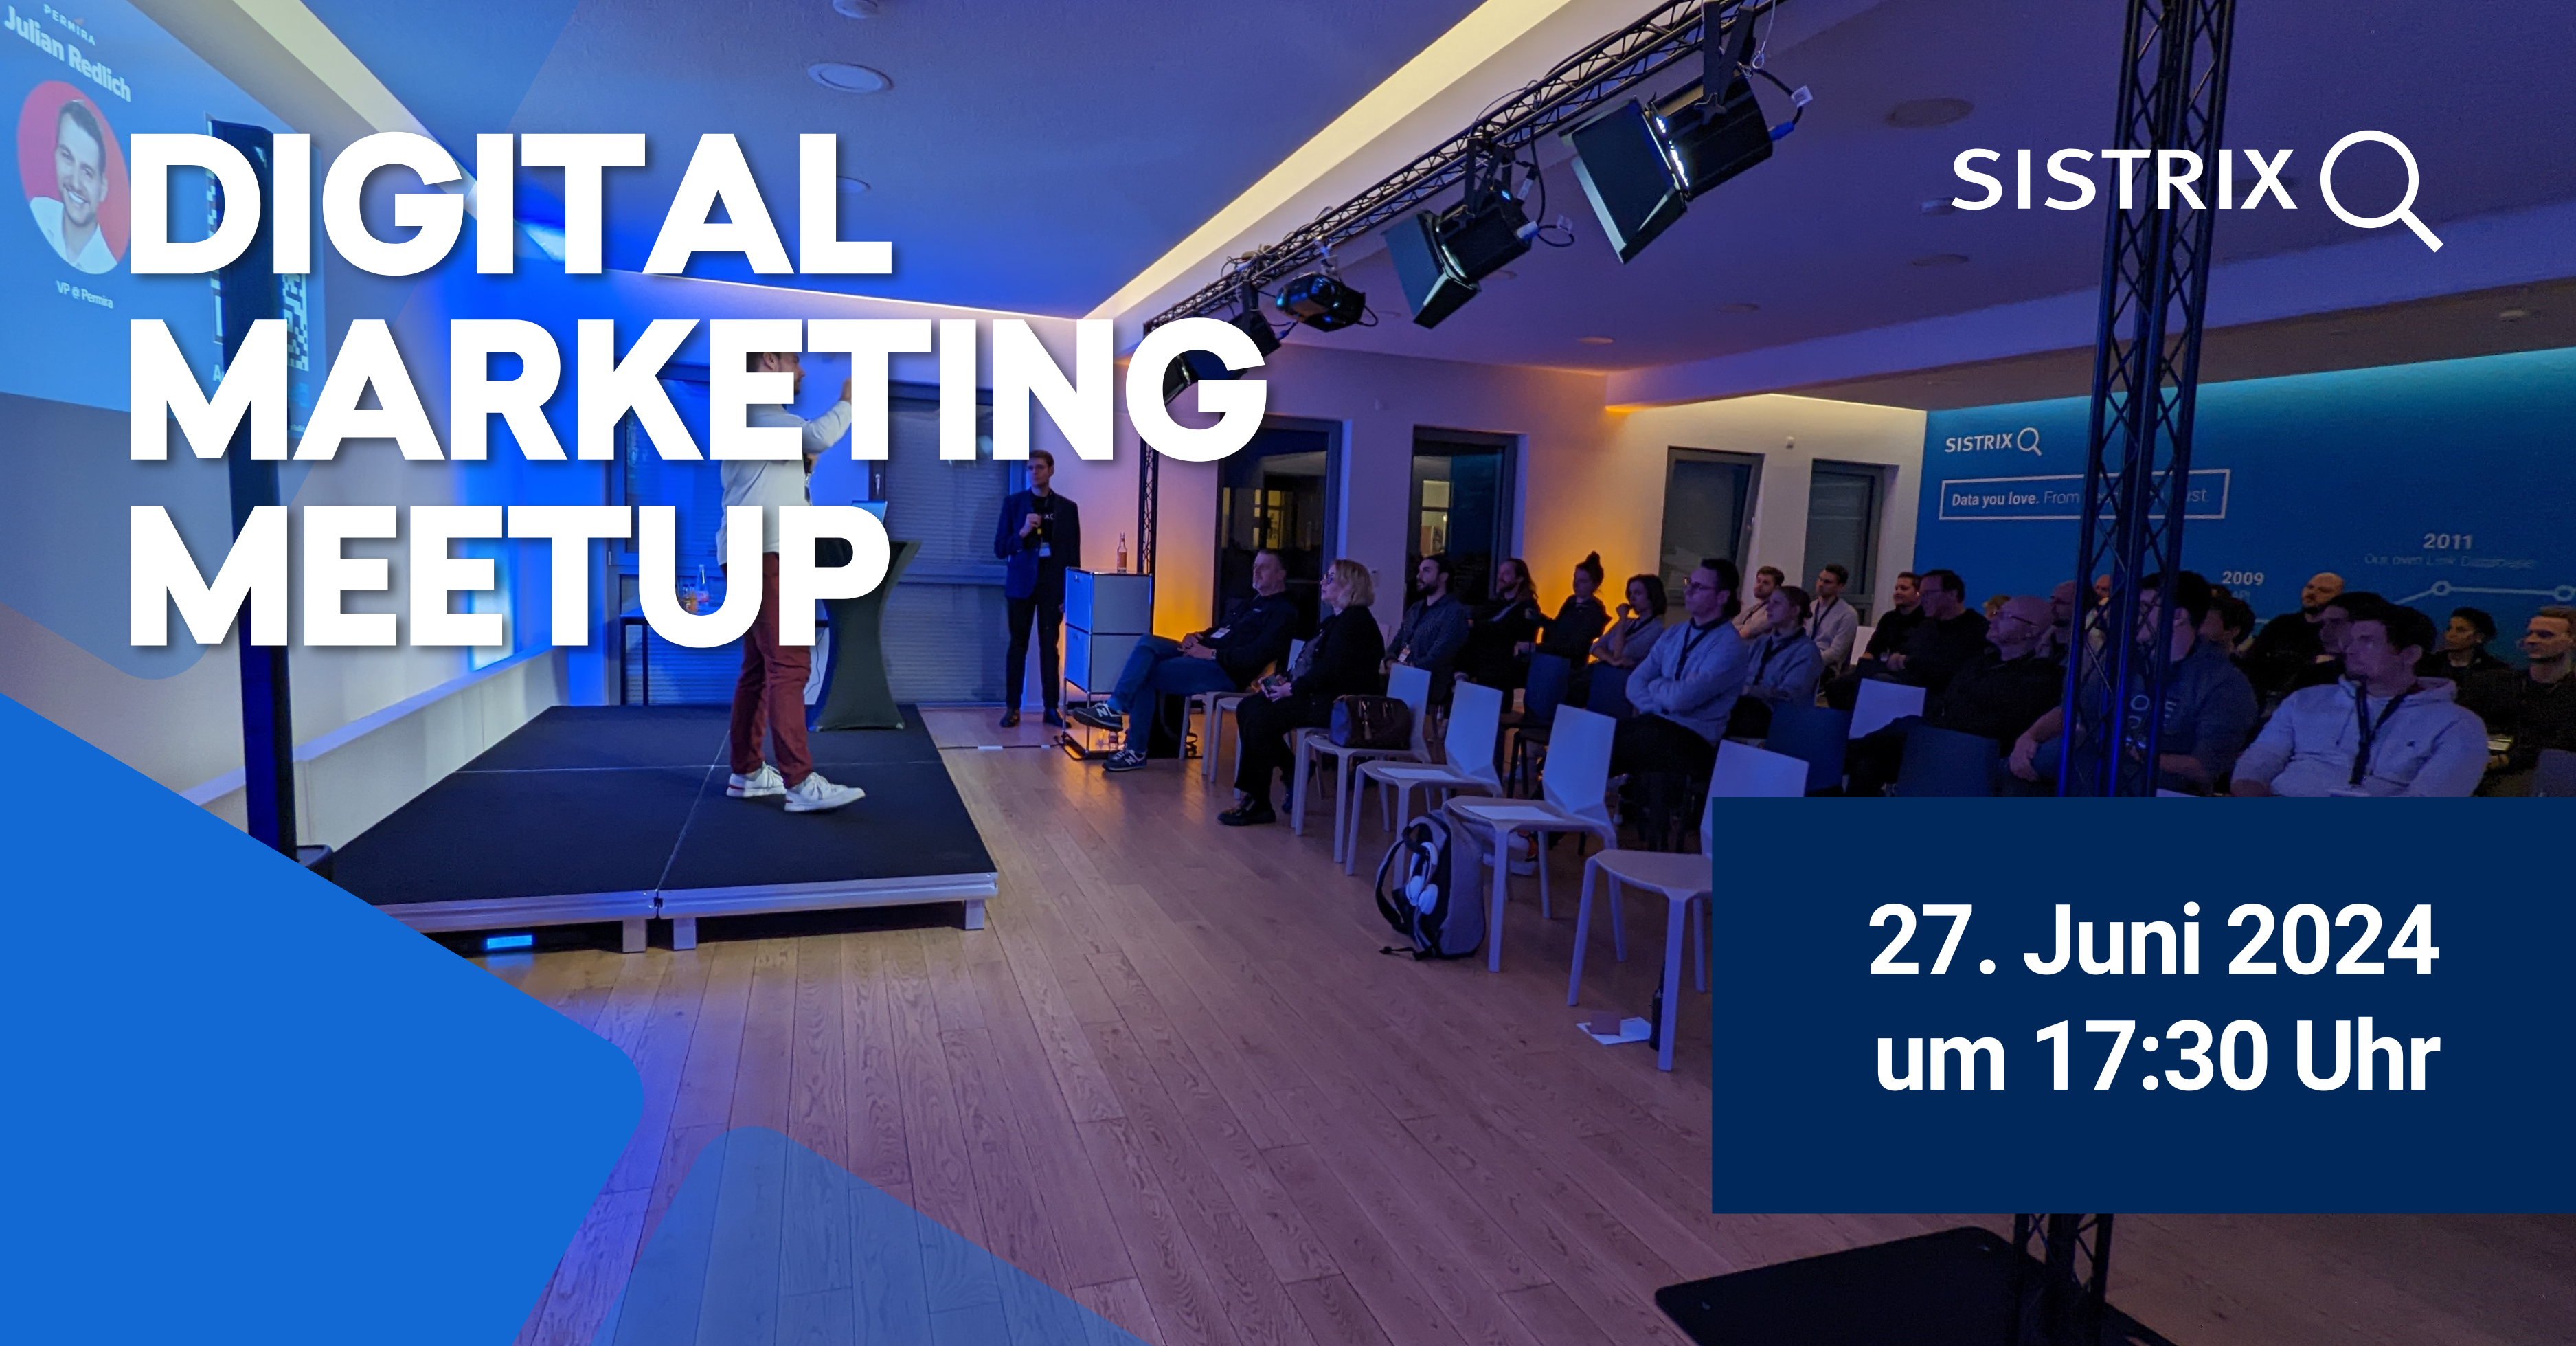 Digital Marketing Meetup bei SISTRIX in Bonn am 27. Juni um 17:30 Uhr